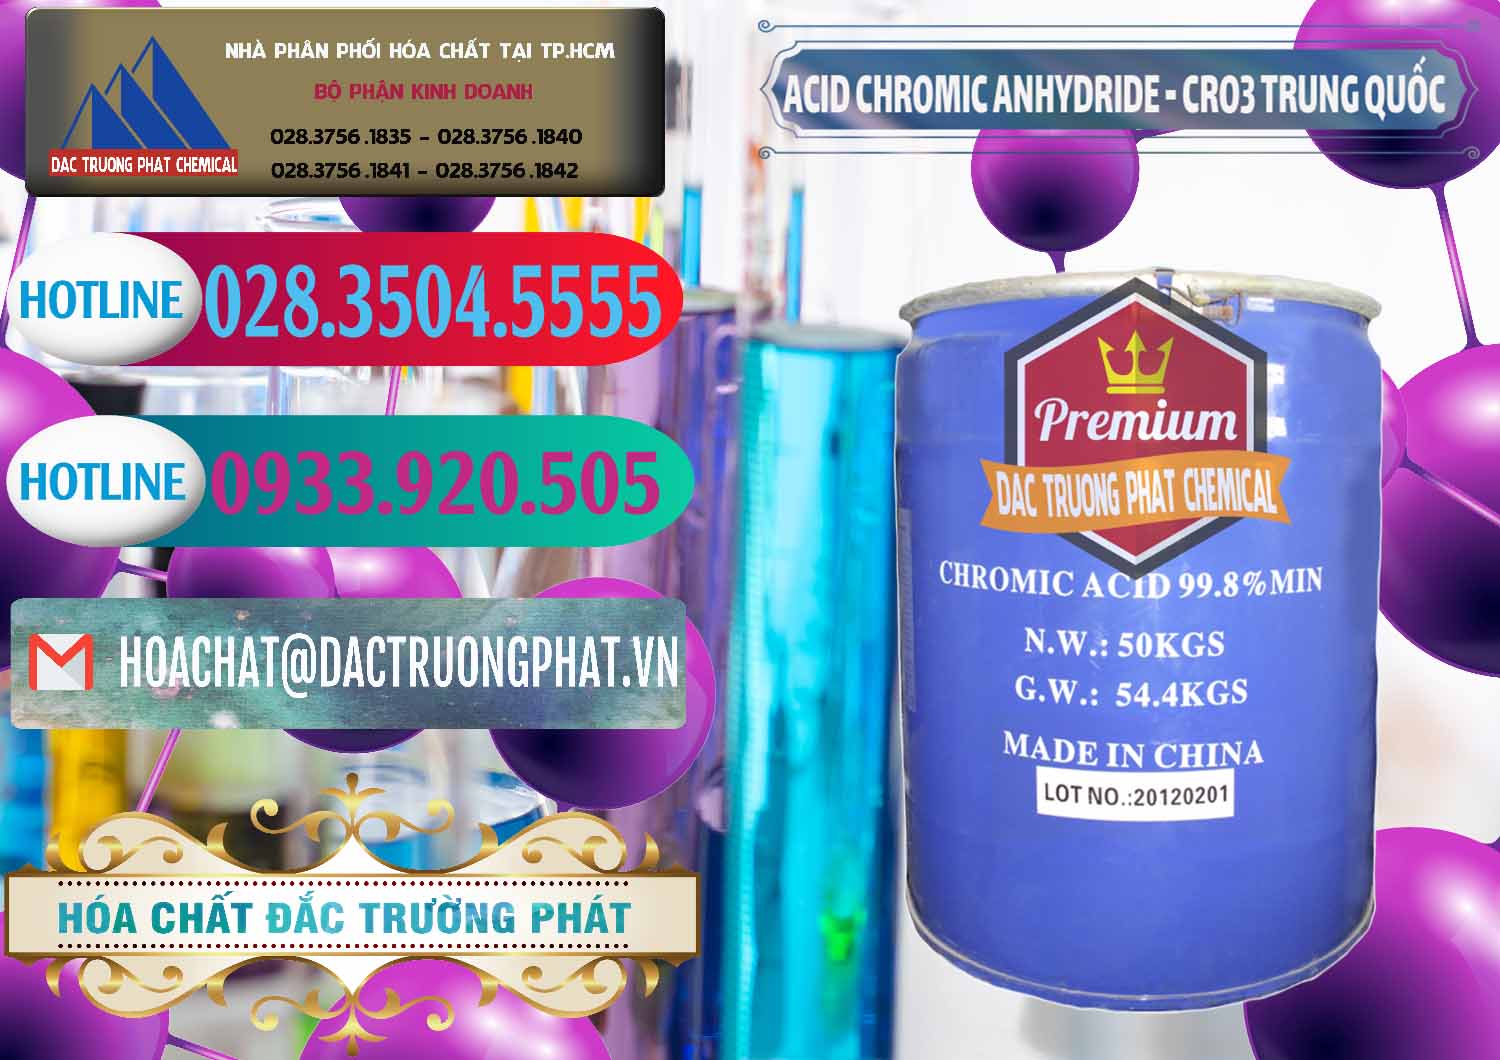 Cty bán & cung cấp Acid Chromic Anhydride - Cromic CRO3 Trung Quốc China - 0007 - Nhà cung cấp _ phân phối hóa chất tại TP.HCM - truongphat.vn